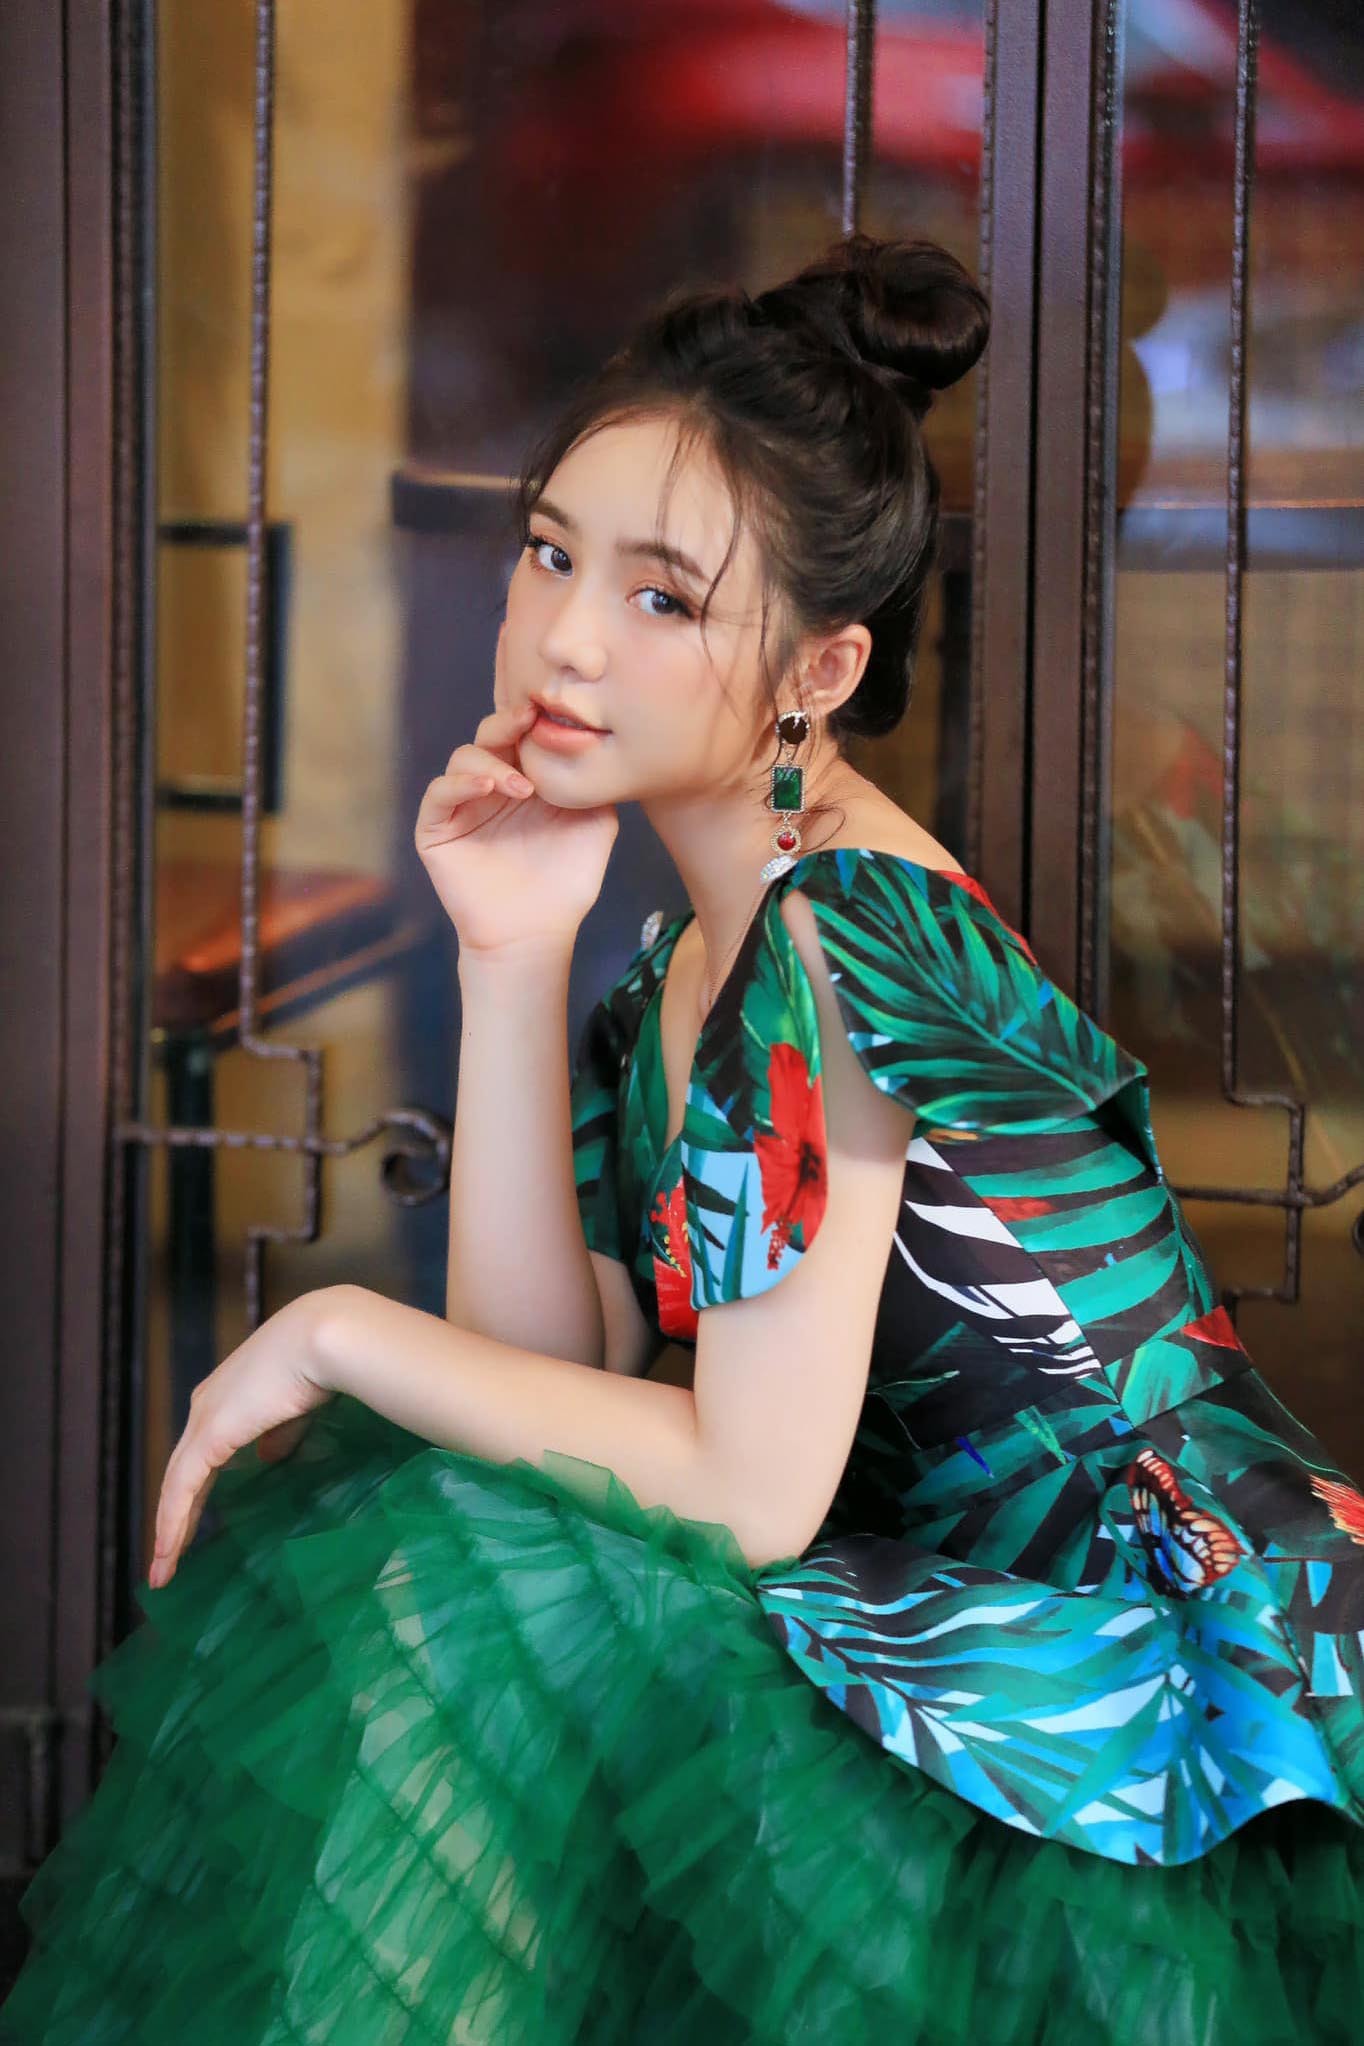 Thời trang điệu đà tôn sắc vóc nuột nà của Quỳnh Kool